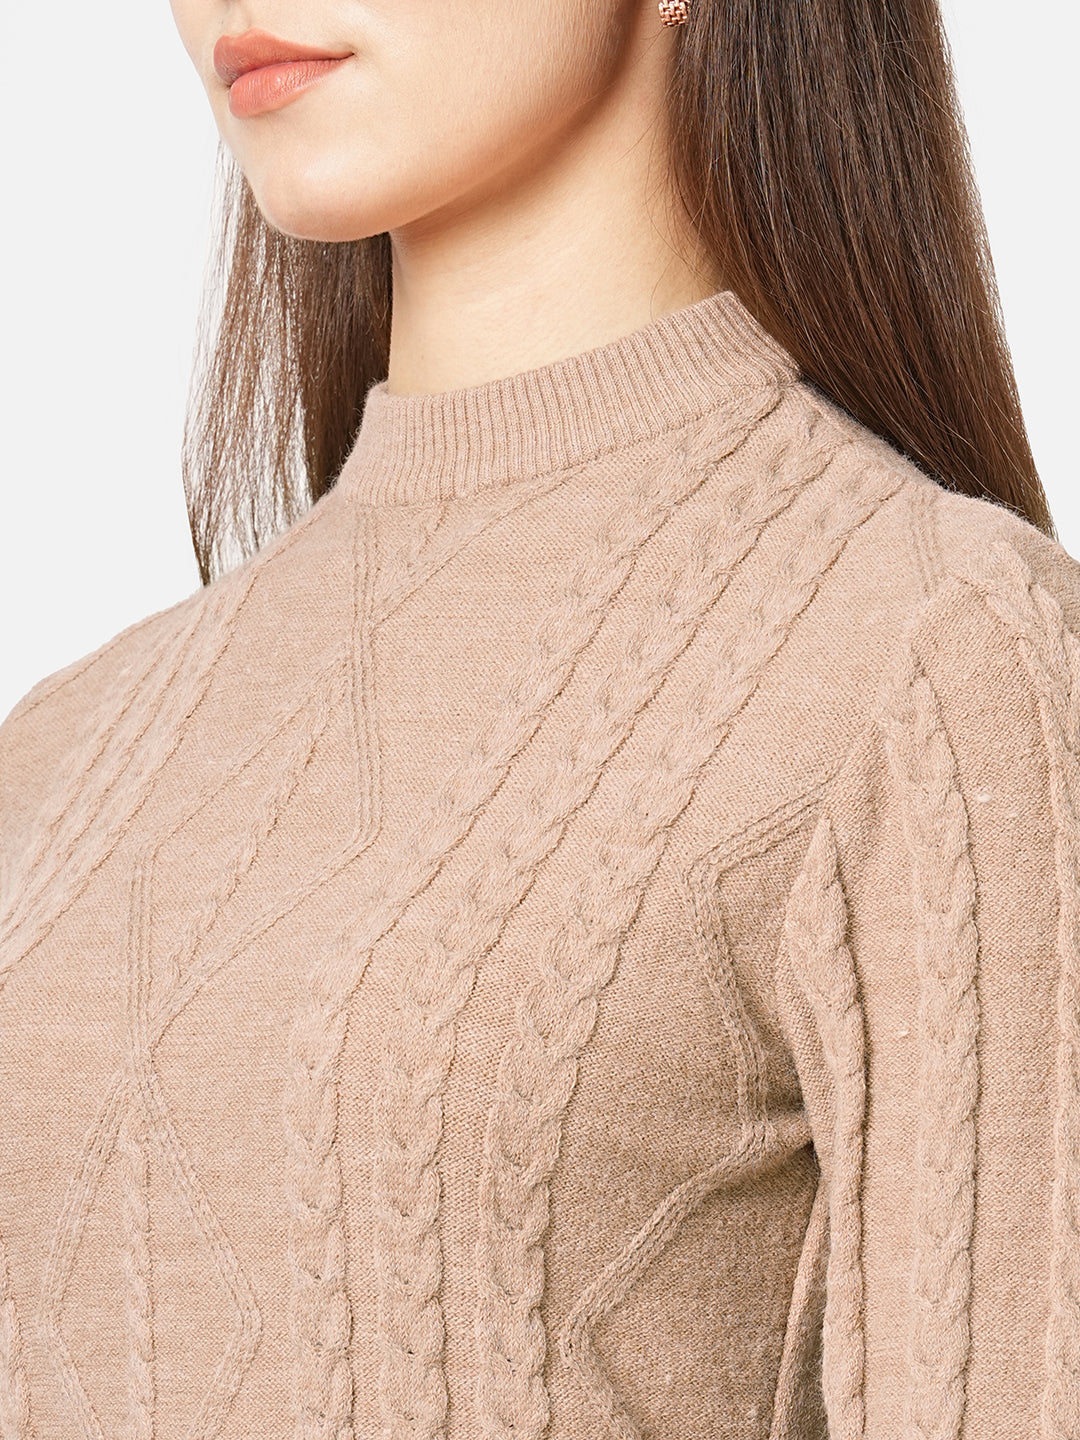 Women Woven Turtle Neck Slim Fit Sweater